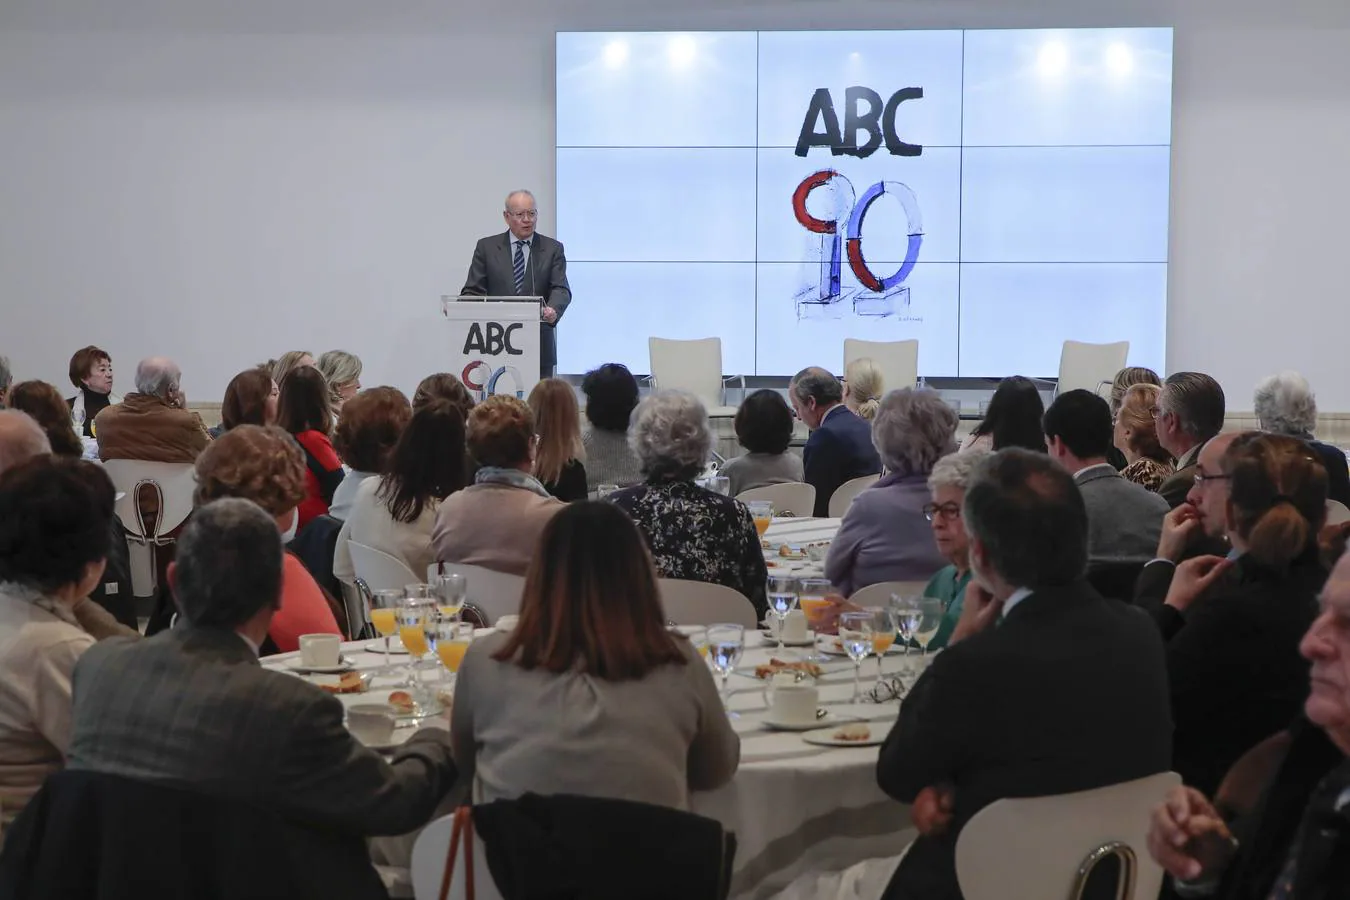 Homenaje a los suscriptores de ABC de Sevilla, en imágenes